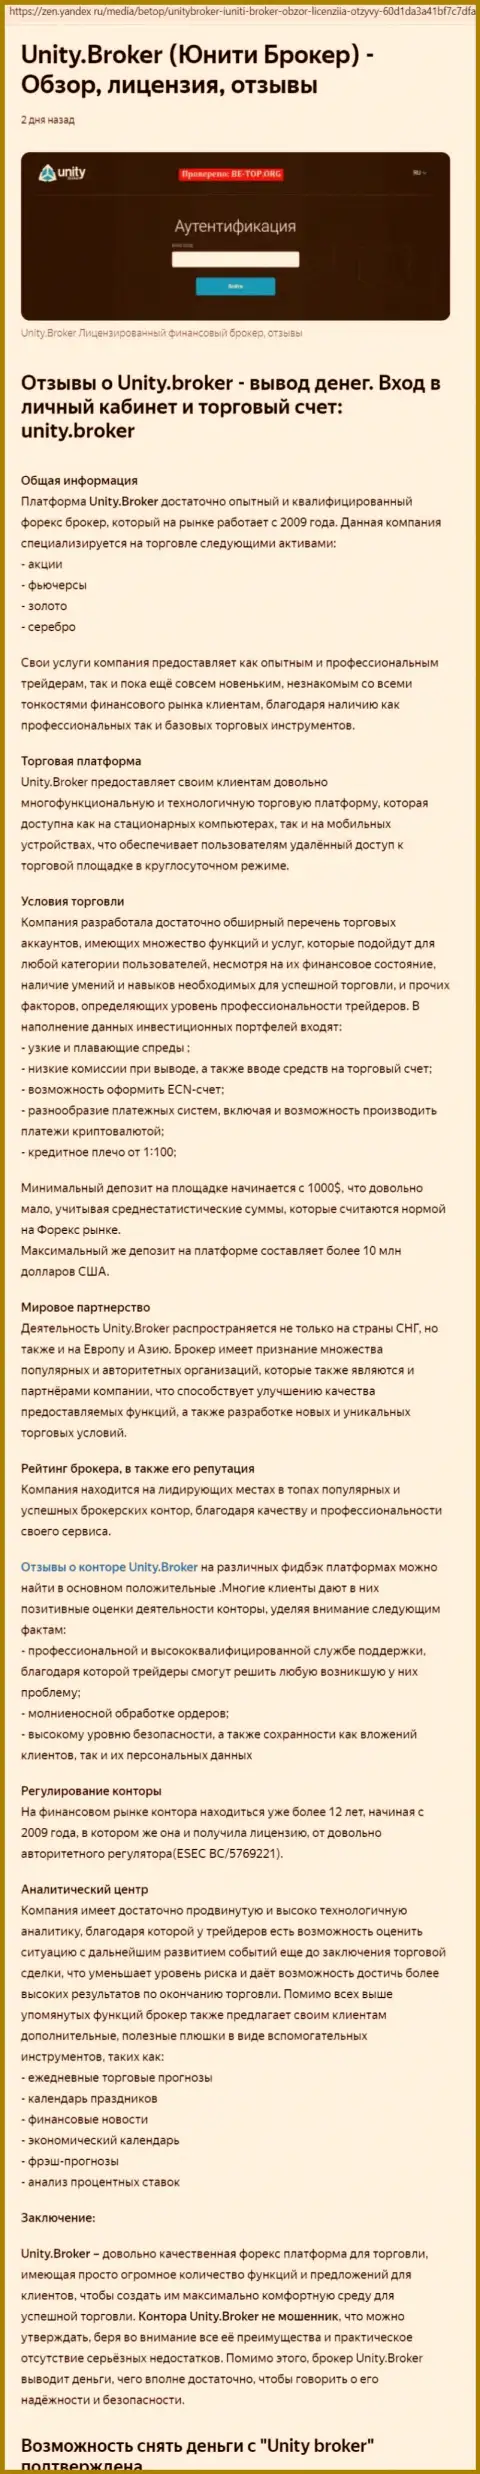 Обзор деятельности форекс дилингового центра Unity Broker на сайте Yandex Zen